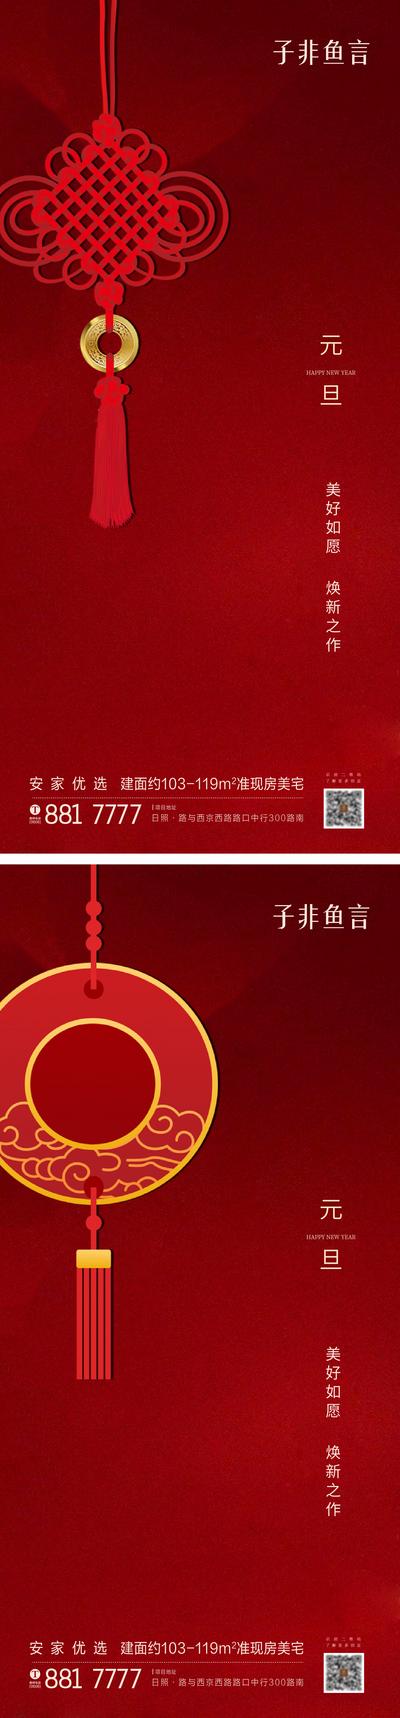 南门网 海报 房地产 公历节日 元旦 系列 中国结